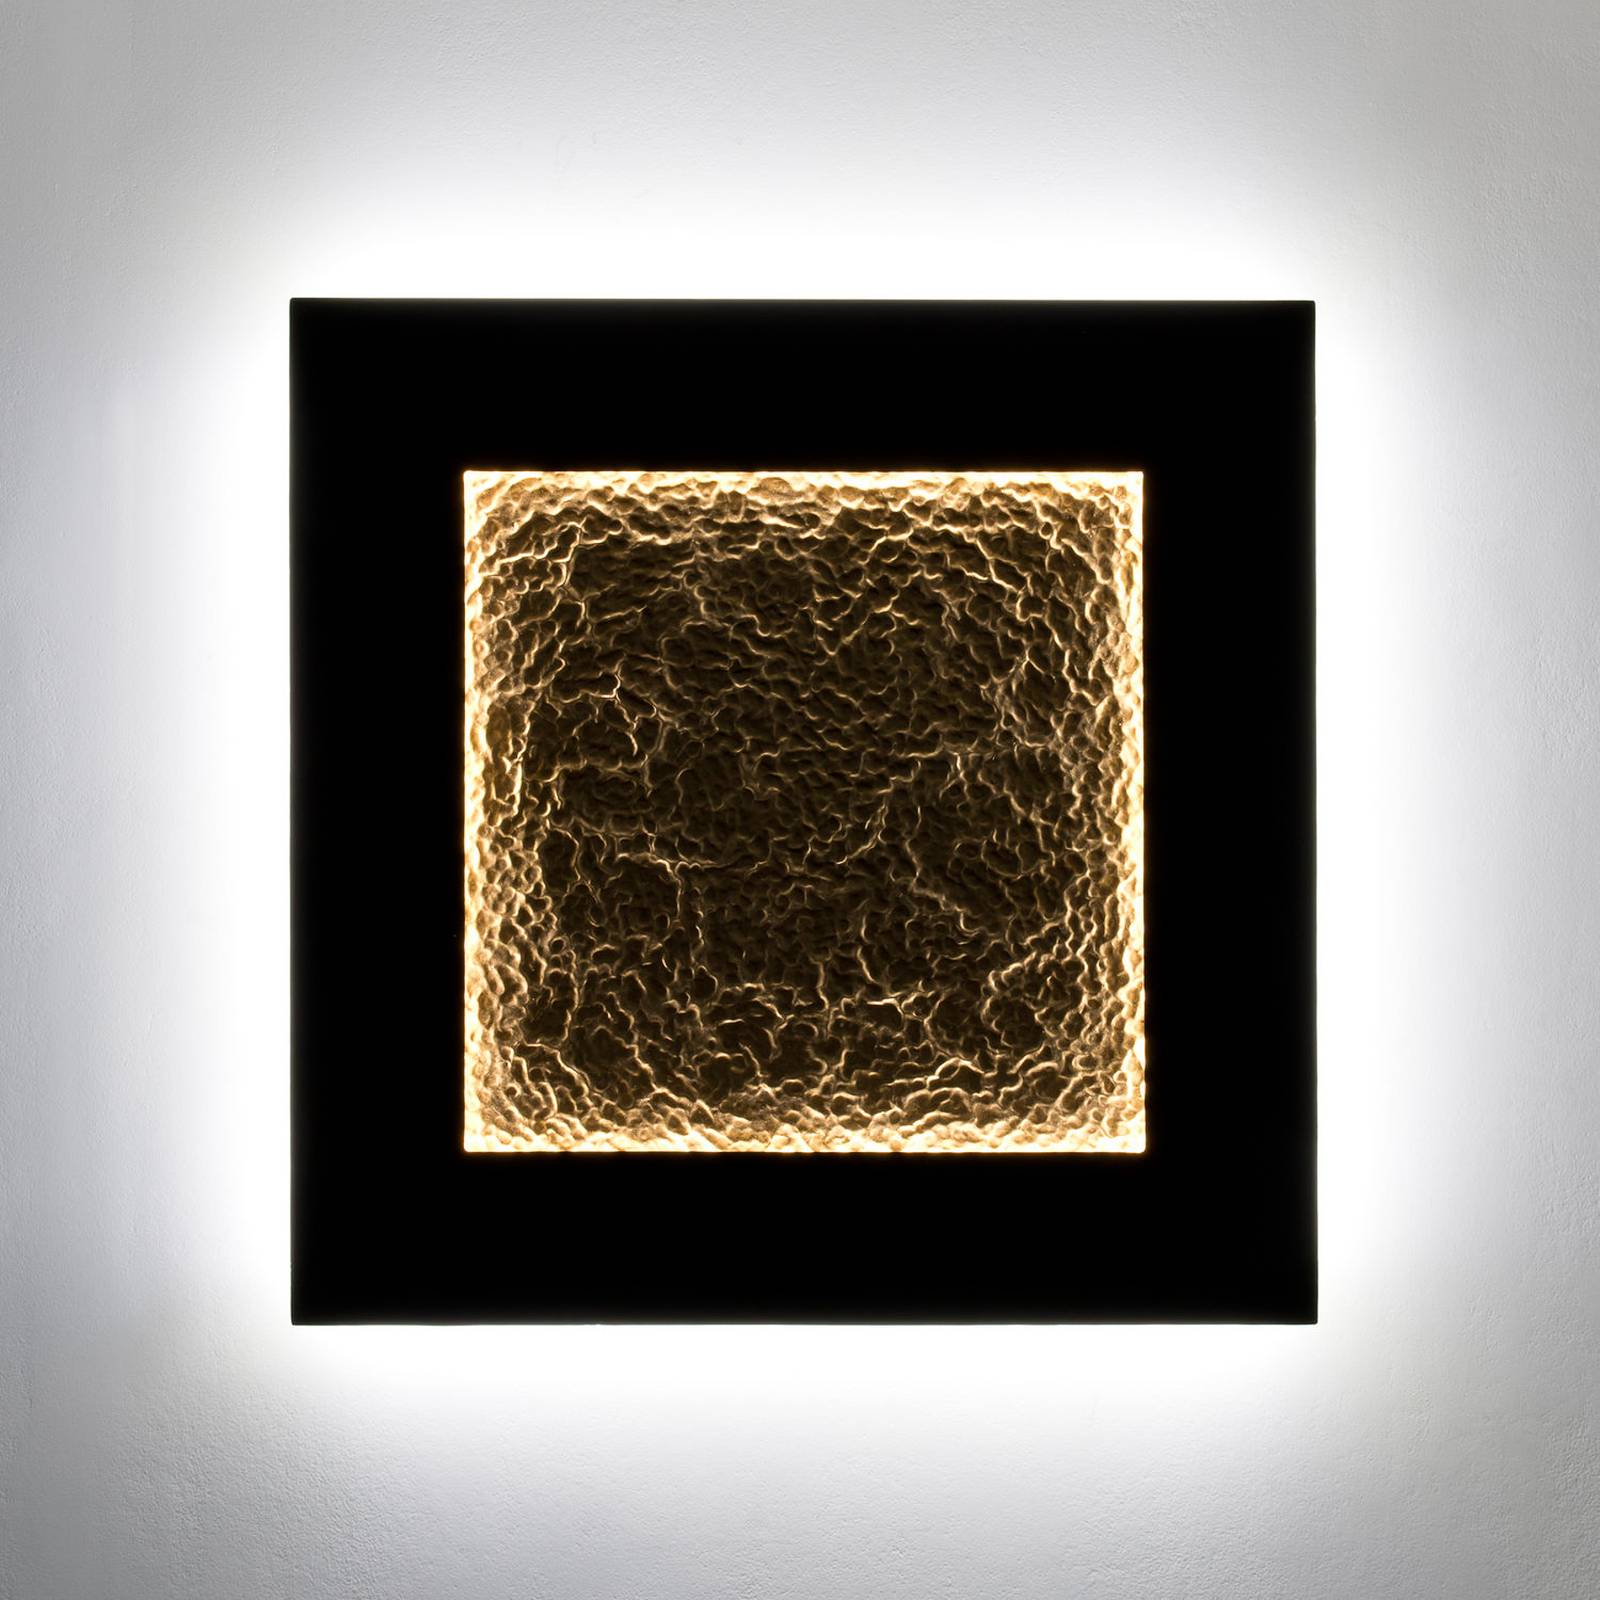 Plenilunio Eclipse LED-es fali lámpa, barna/arany színű, 80 cm-es